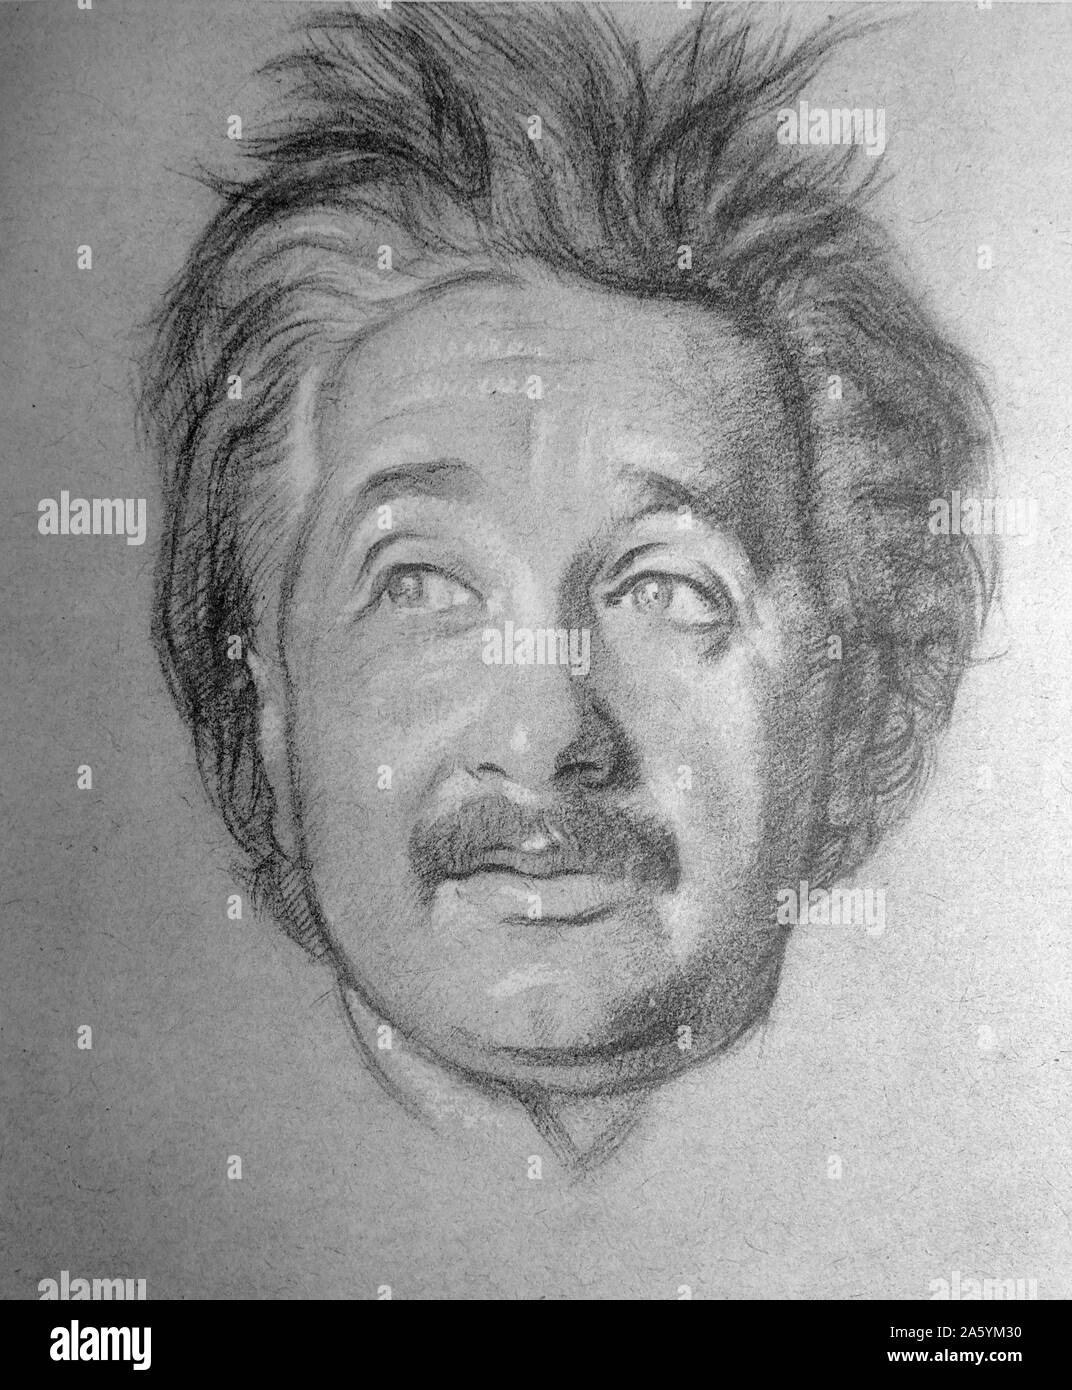 Portrait von Professor Albert Einstein von Sir William Rothenstein. Rothenstein (1872-1945) war ein englischer Maler, Grafiker und Zeichner. Stockfoto